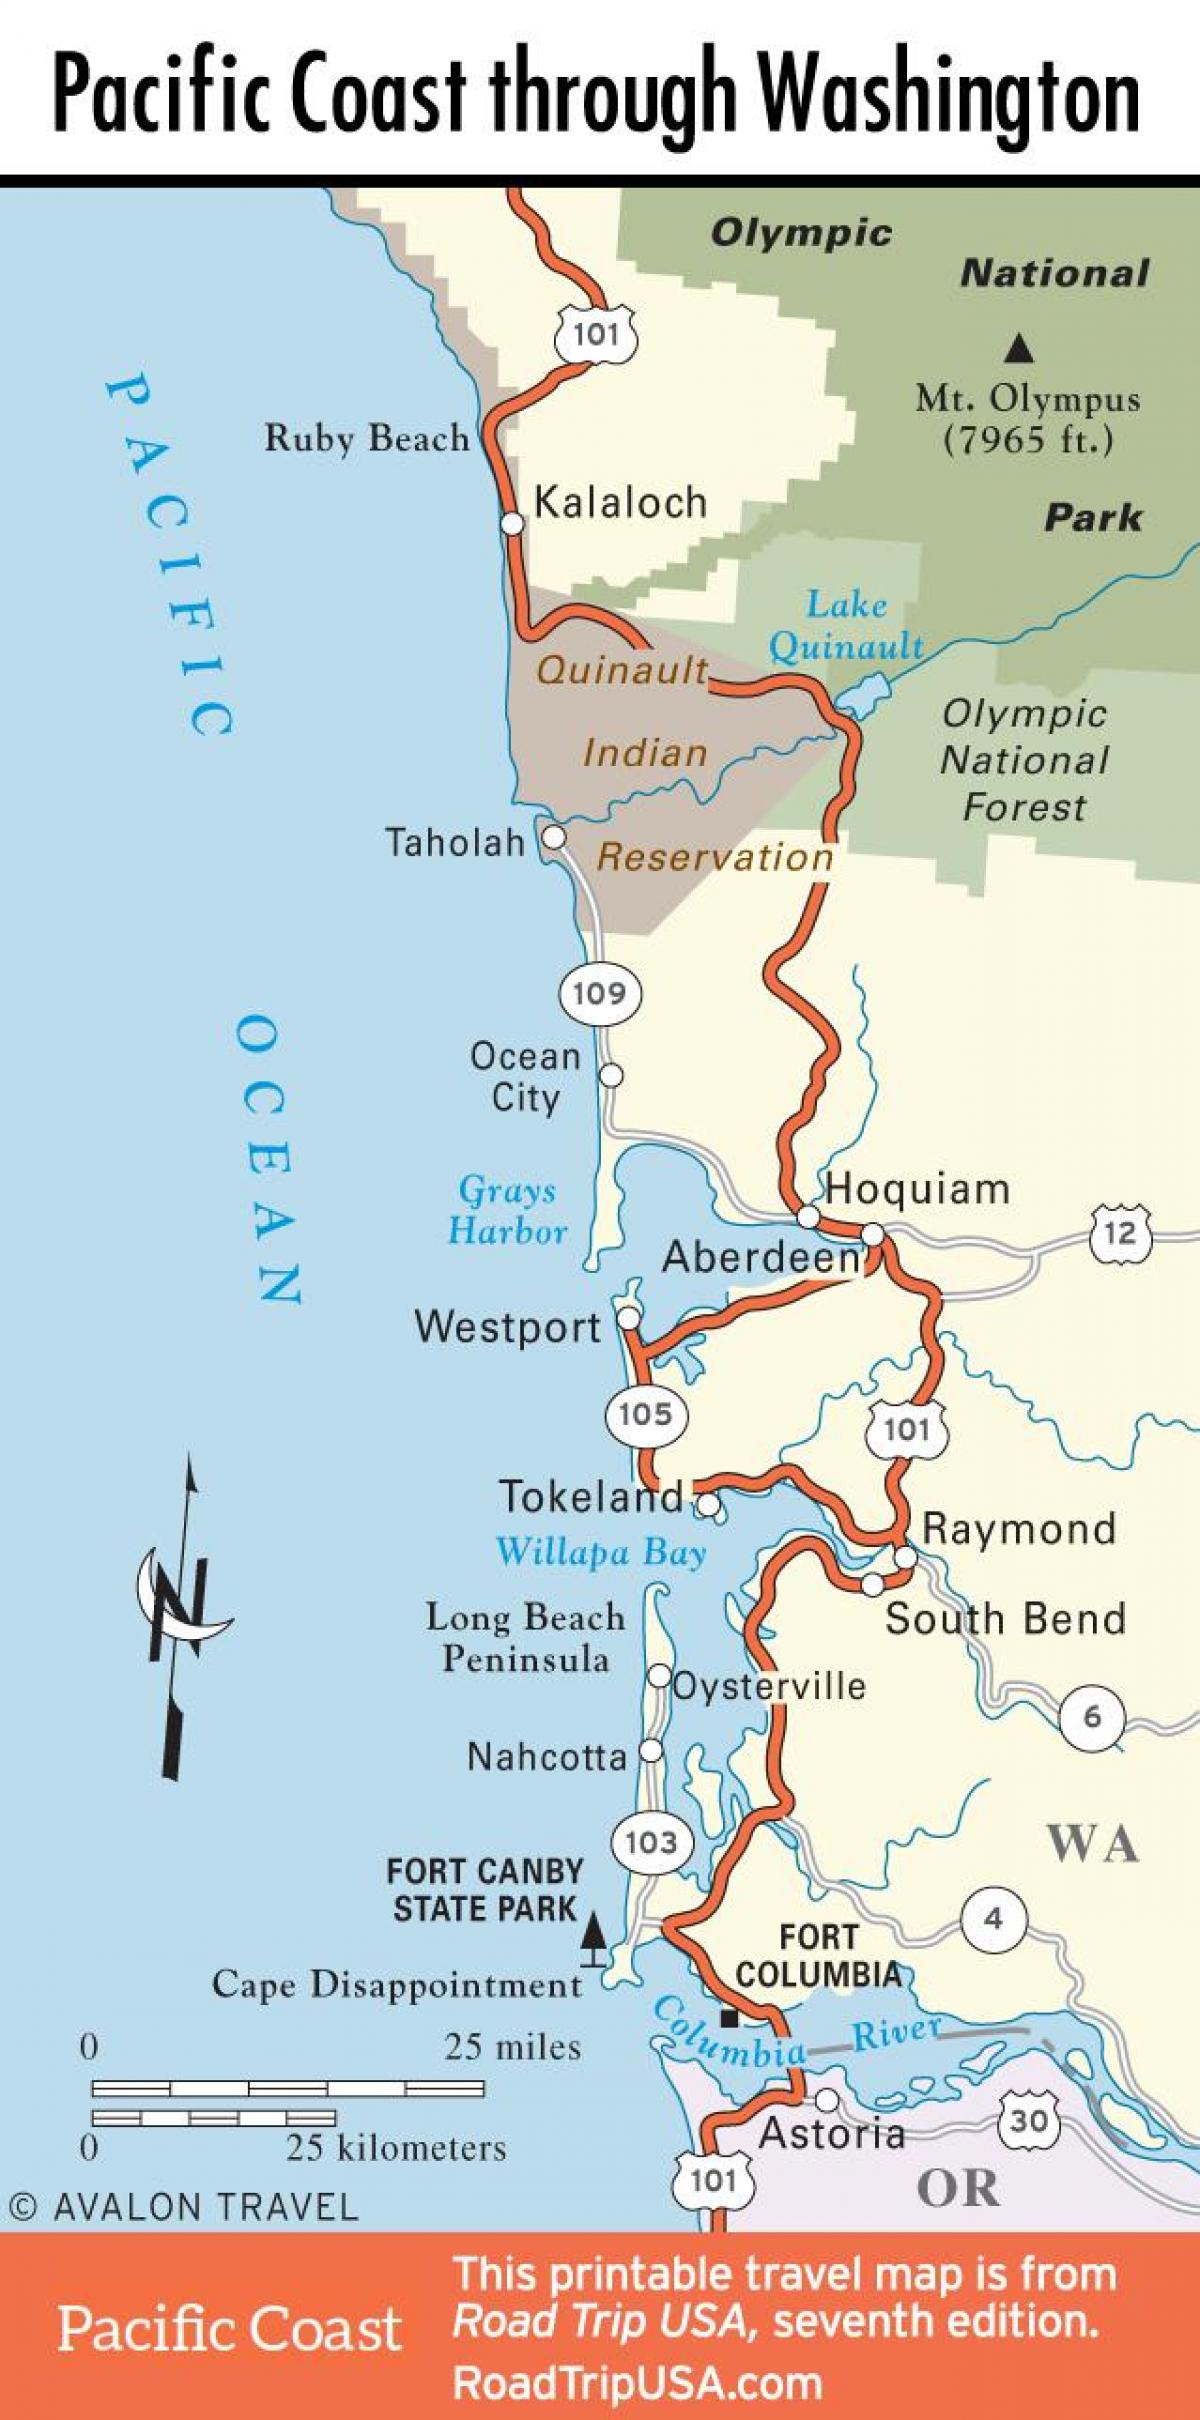 San Francisco rannikko kartta